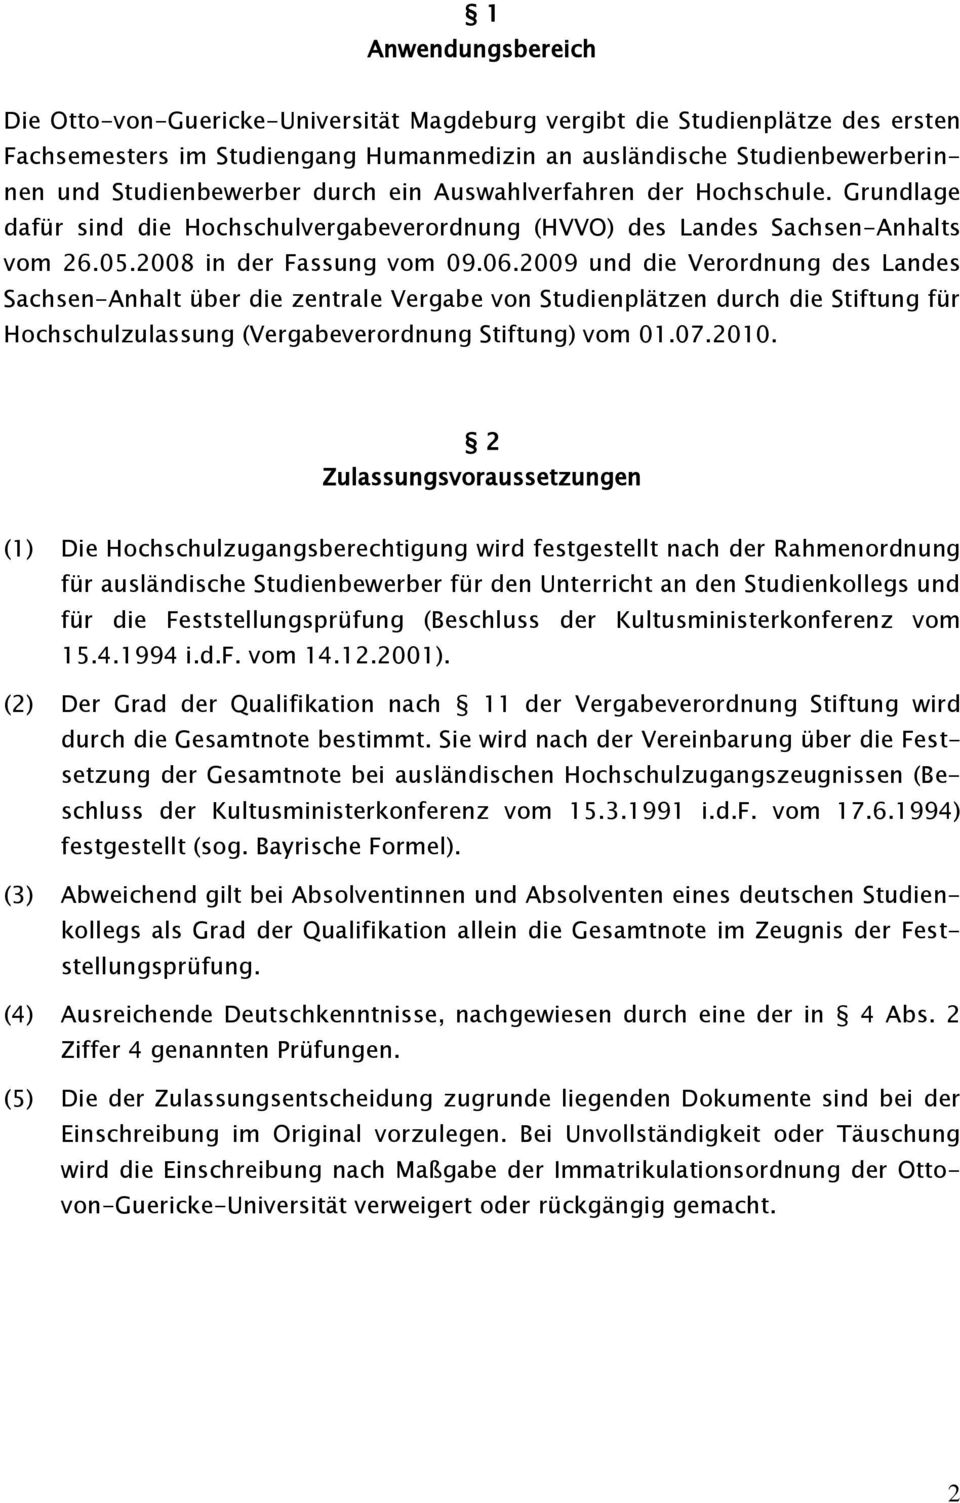 2009 und die Verordnung des Landes Sachsen-Anhalt über die zentrale Vergabe von Studienplätzen durch die Stiftung für Hochschulzulassung (Vergabeverordnung Stiftung) vom 01.07.2010.